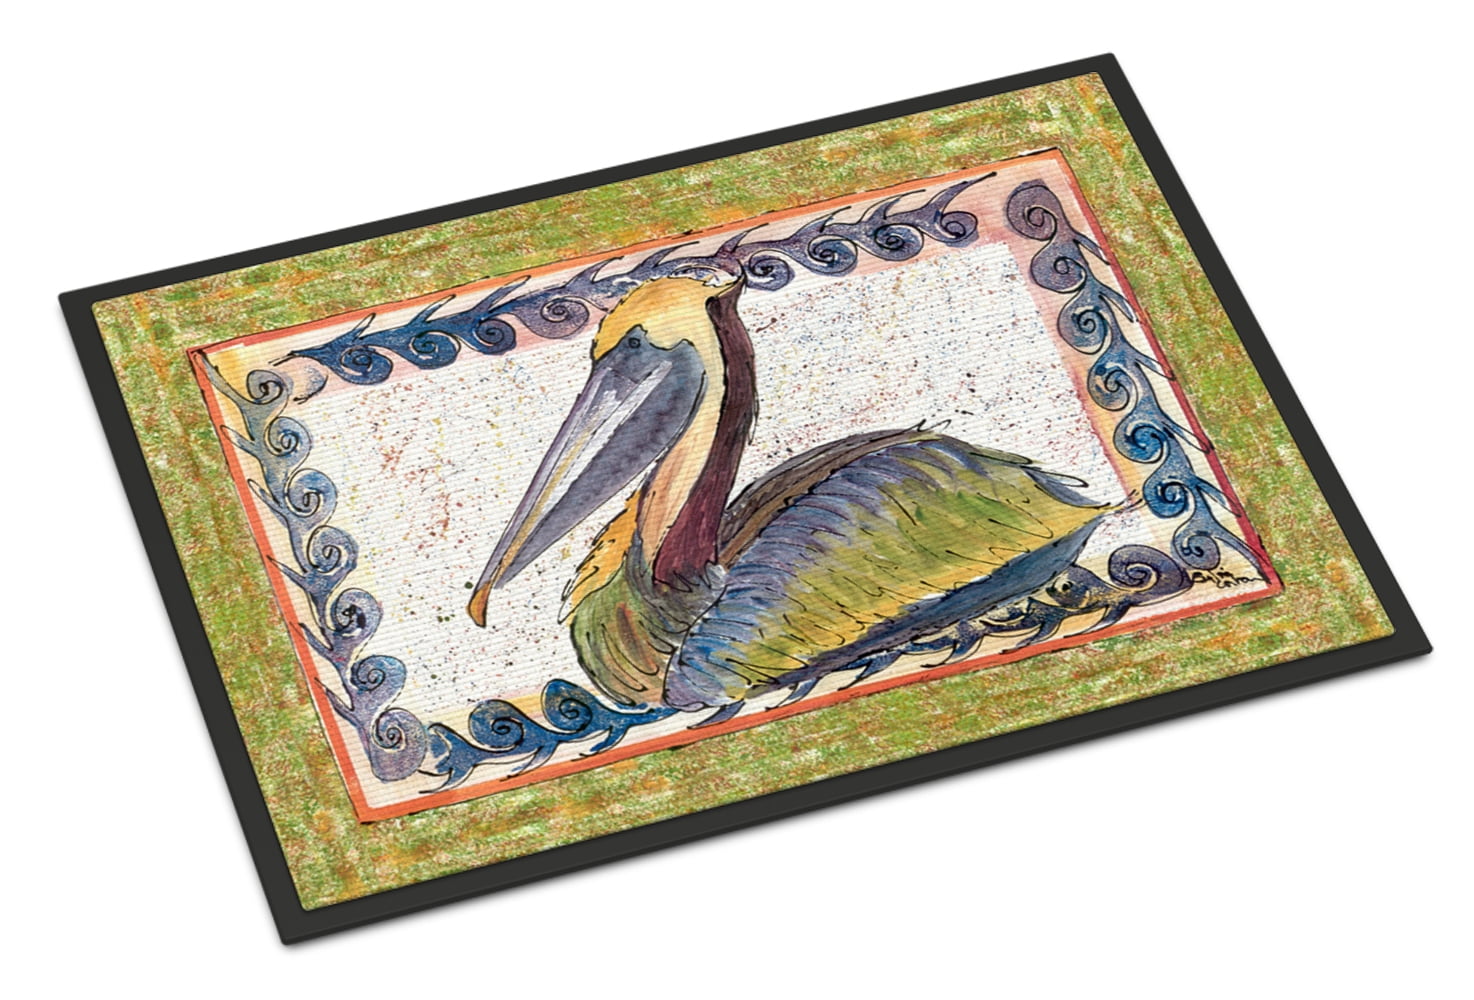 Carolines Treasures Pelicans Preening Indoor or Outdoor Mat 24 x 36 Multicolor